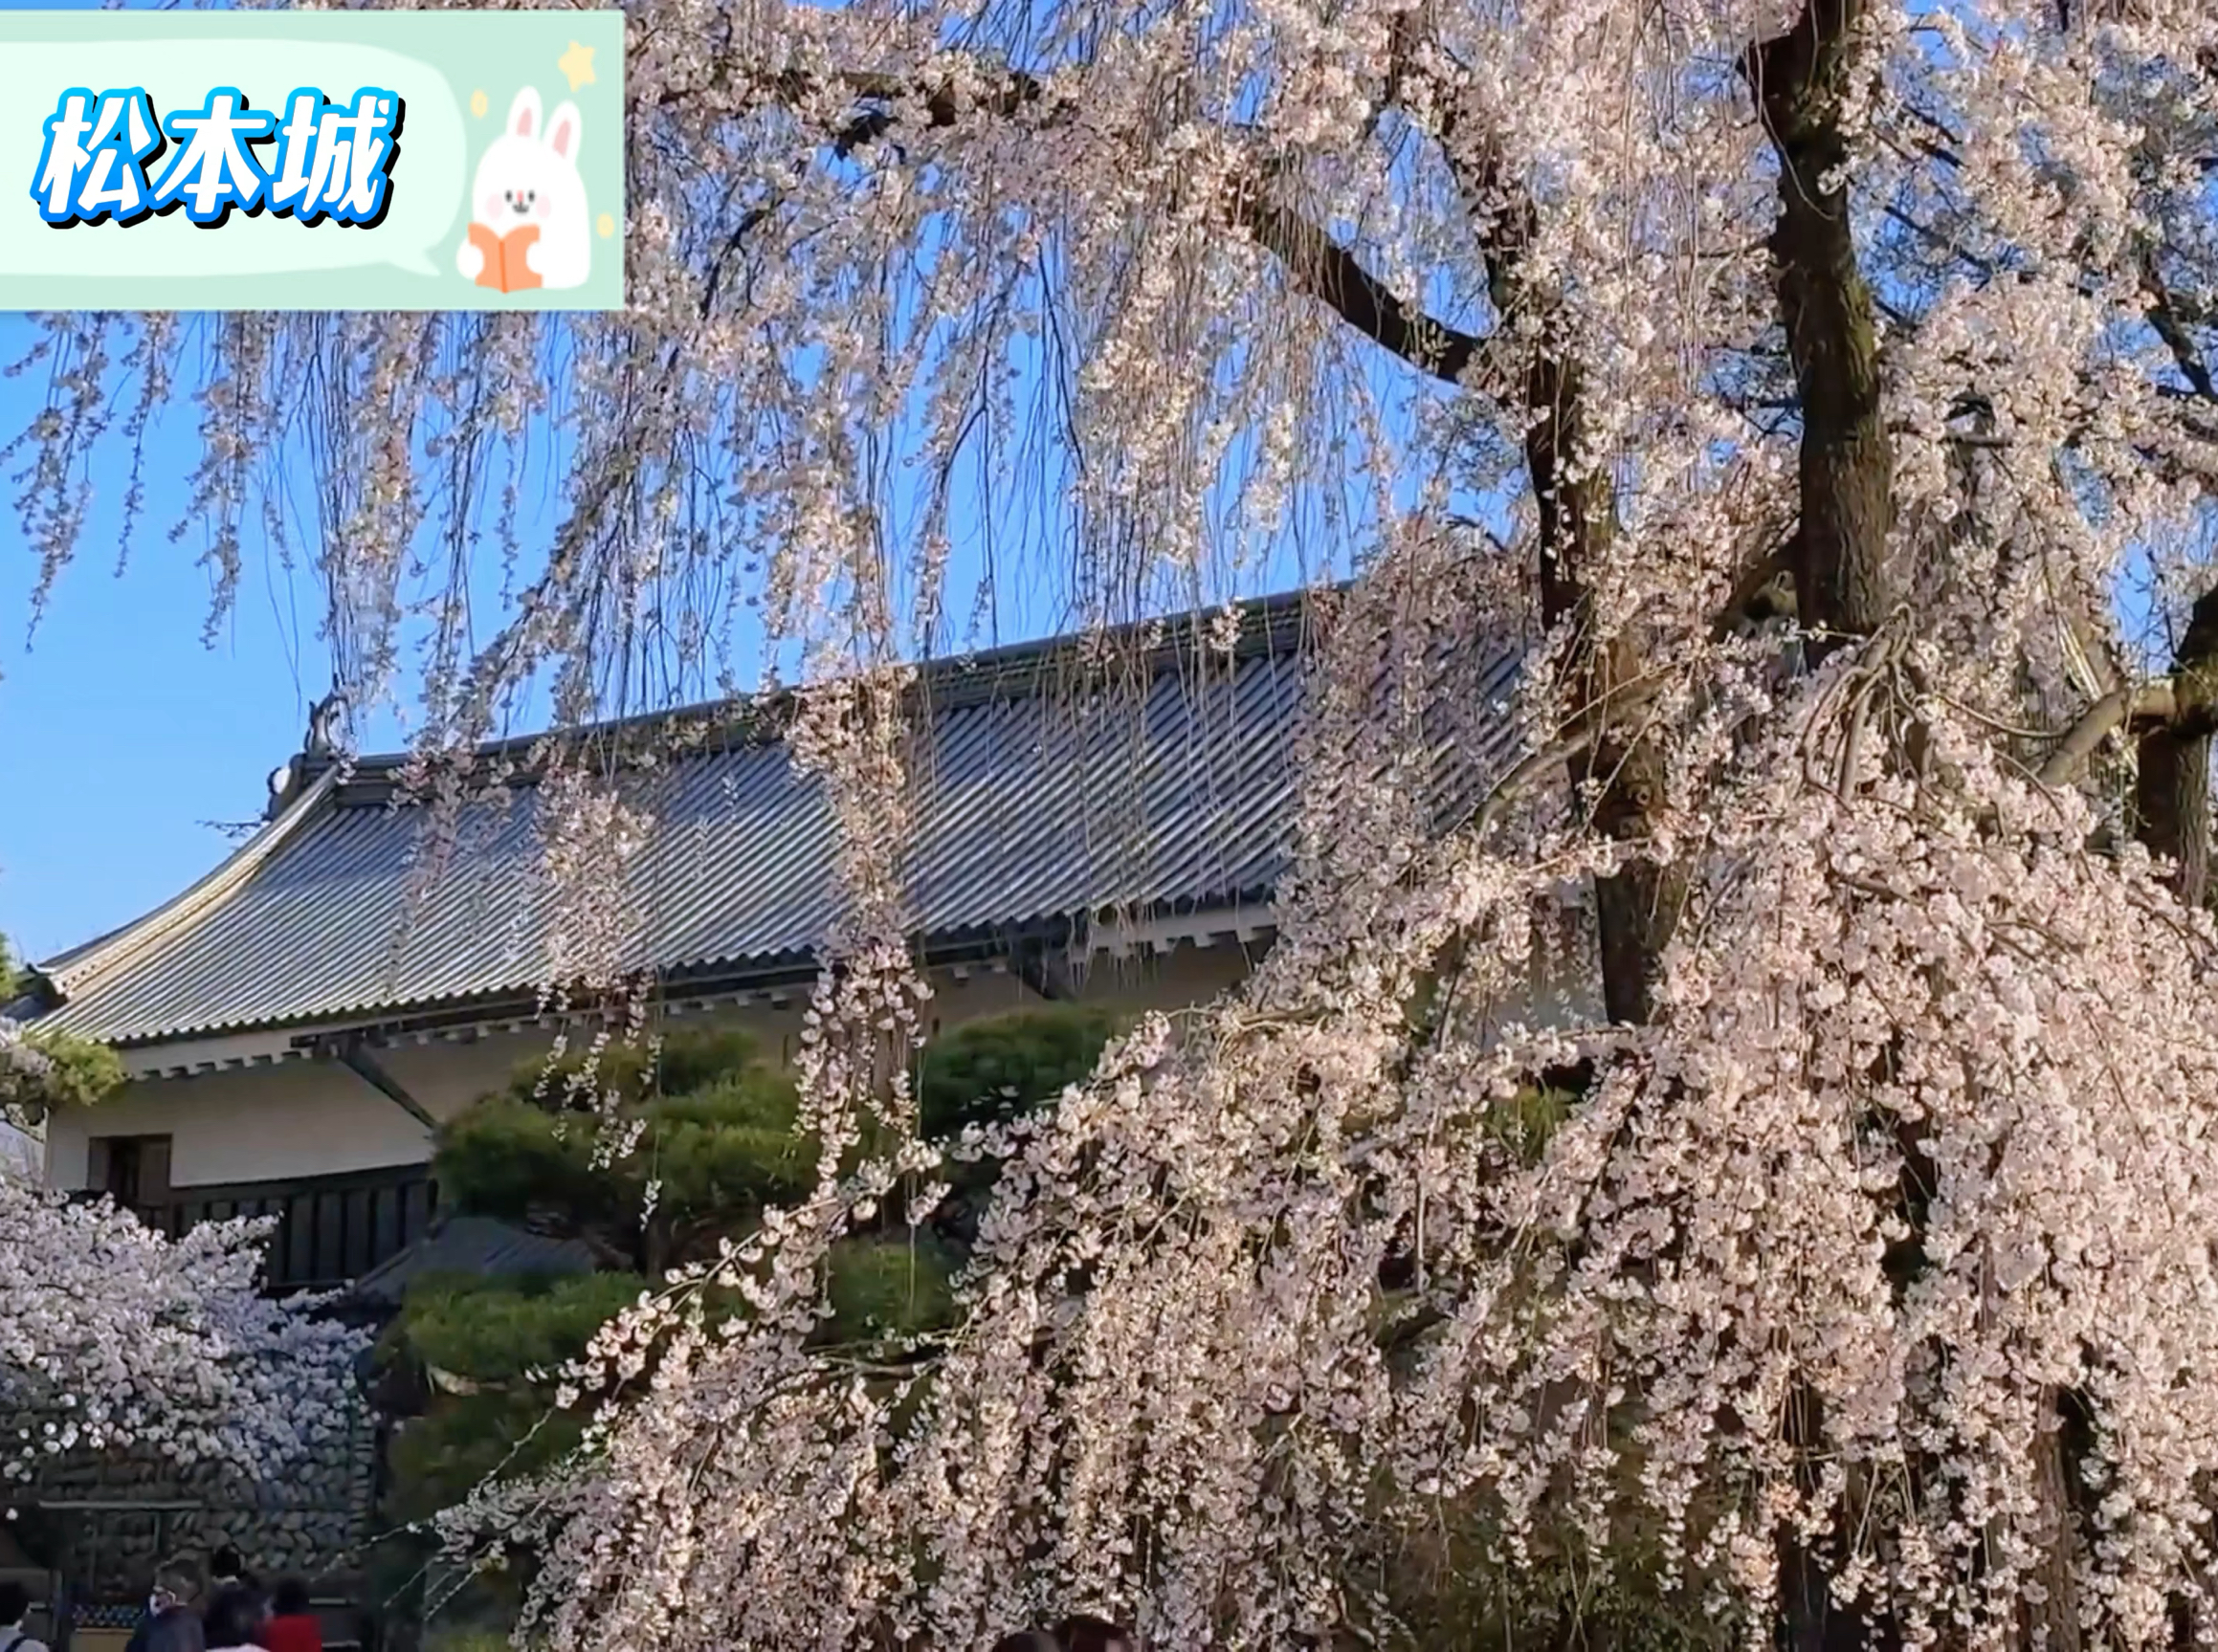 松本城赏樱全攻略 — 长野之春美不胜收 🌸🏰